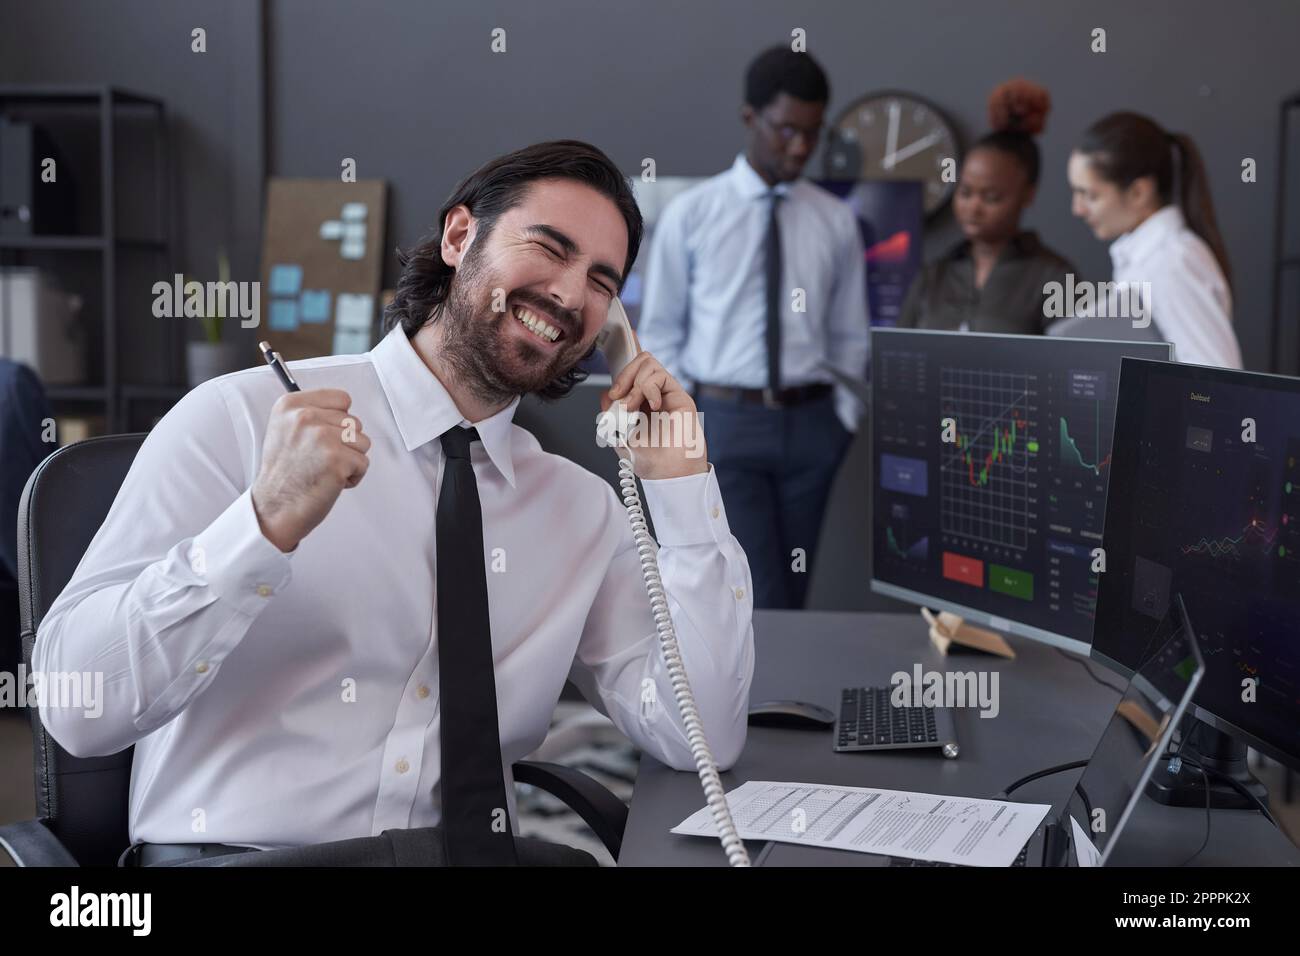 Erfolgreicher Makler, der telefonisch mit ihm spricht und mit dem Geschäft zufrieden ist, während er an seinem Arbeitsplatz mit Computern arbeitet Stockfoto